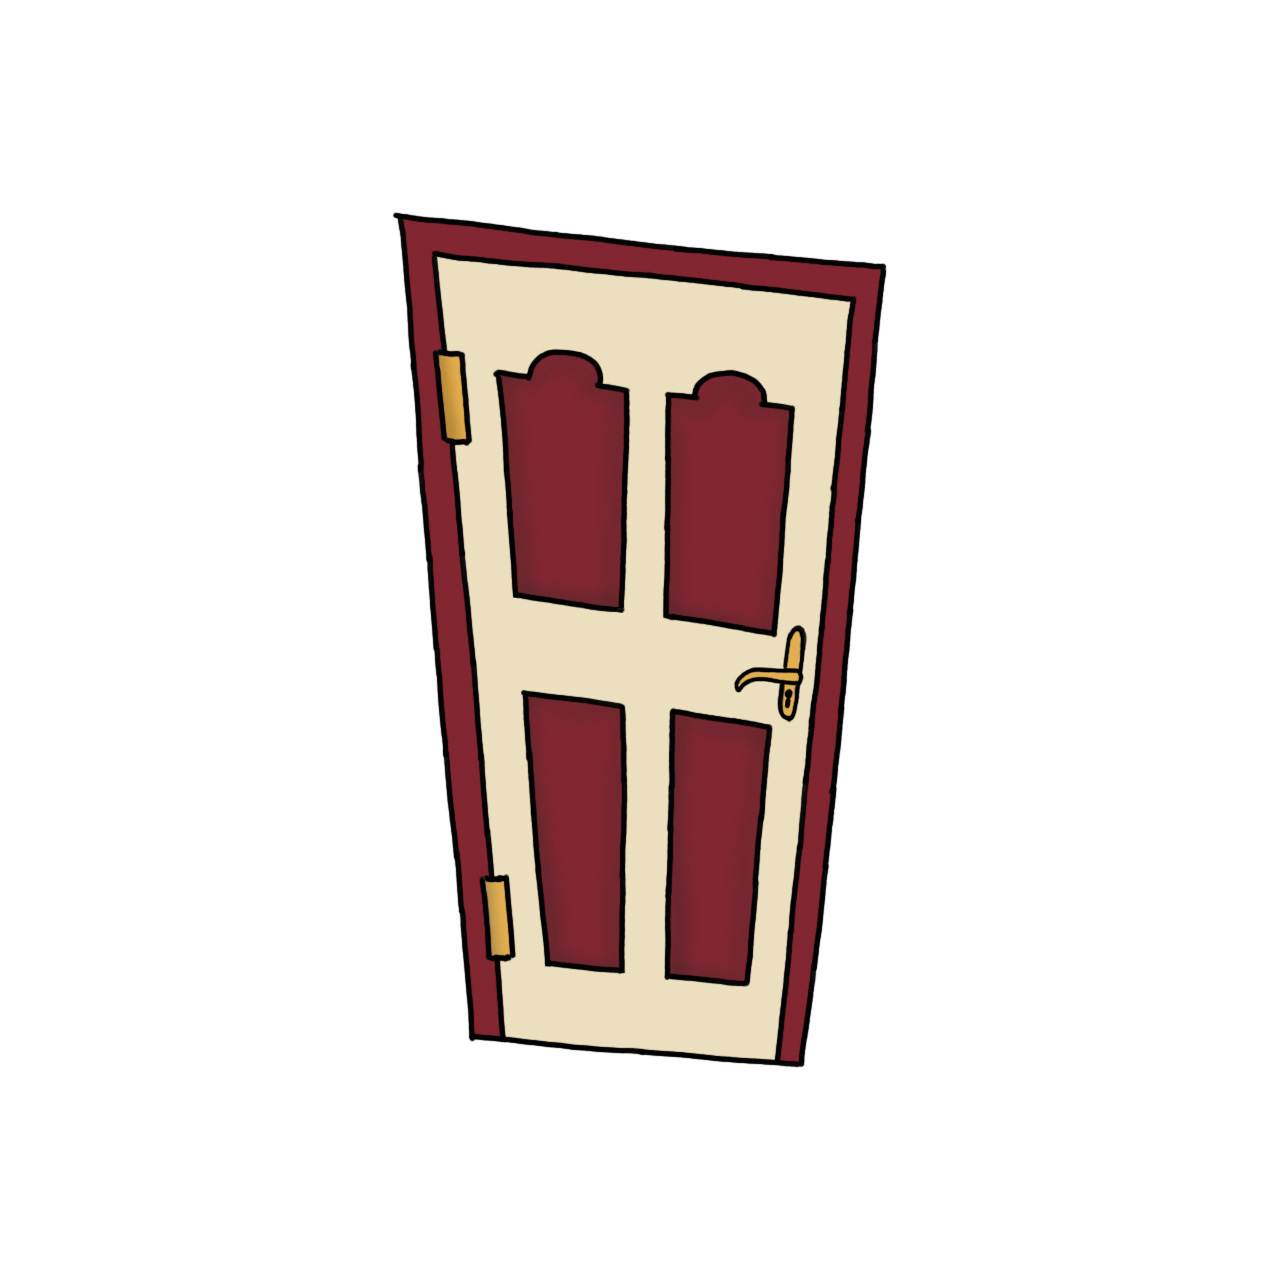 Vrata u kombinaciji svijetlih tonova i bordo boje.